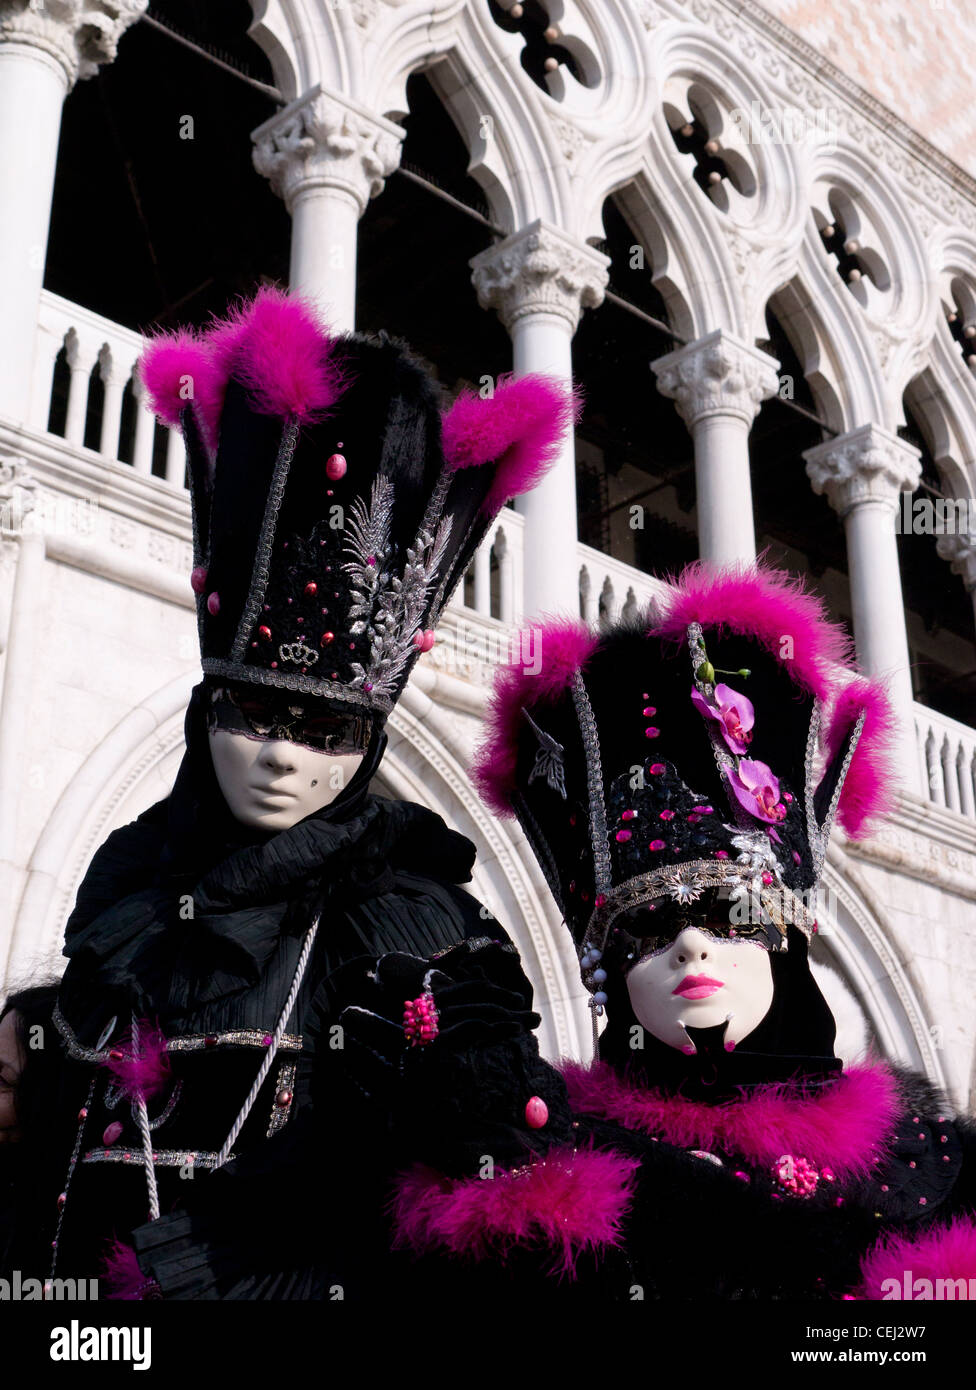 Maskierte Personen im Karneval oder Carnevale in Venedig Italien Stockfoto